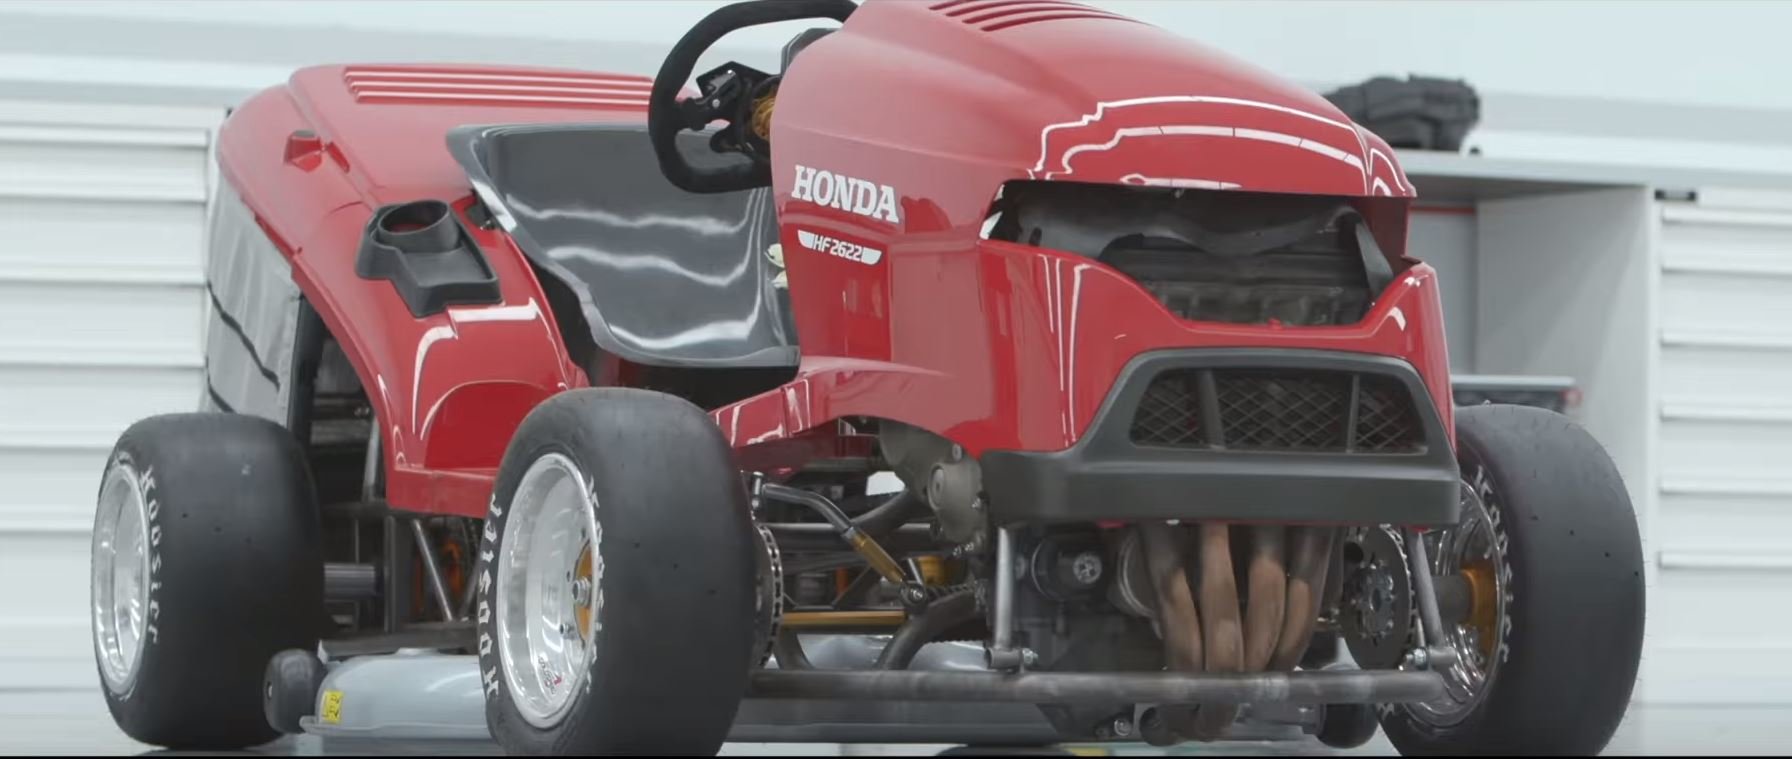 Druhá generace nadupané "závodní" sekačky Honda Mean Mower